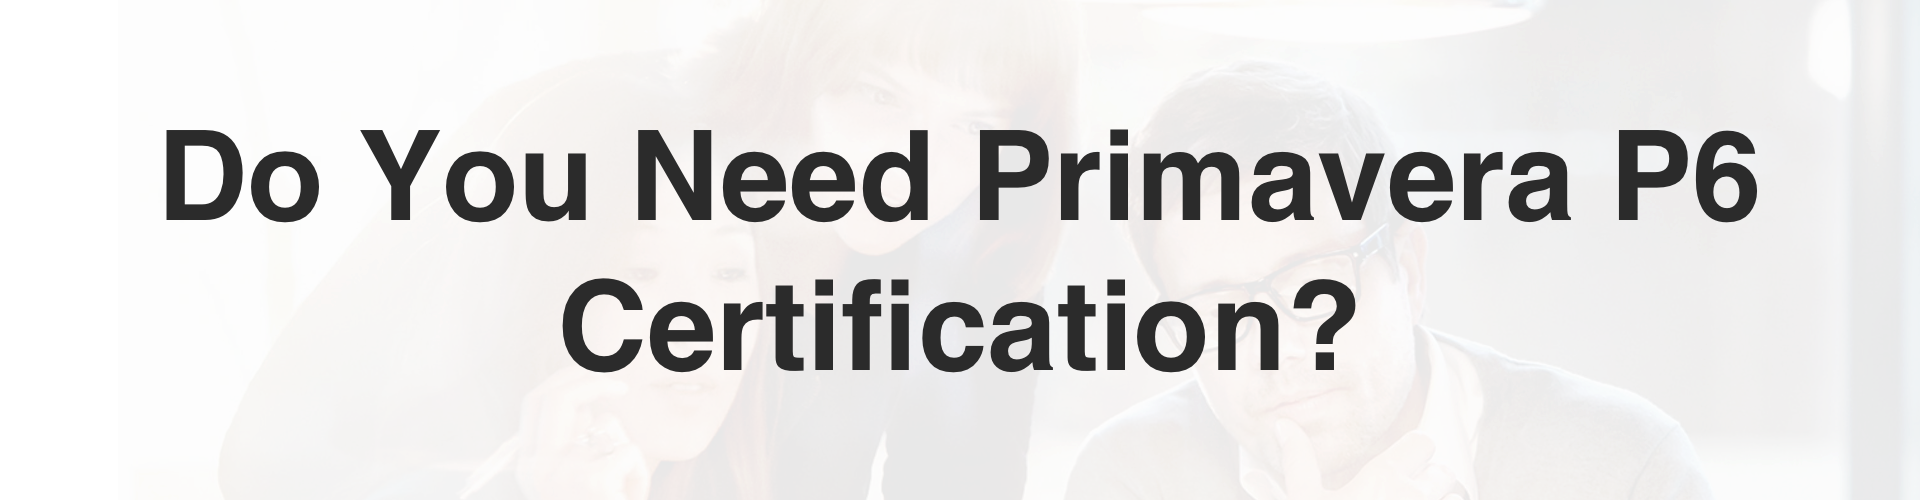 Primavera P6 Certification